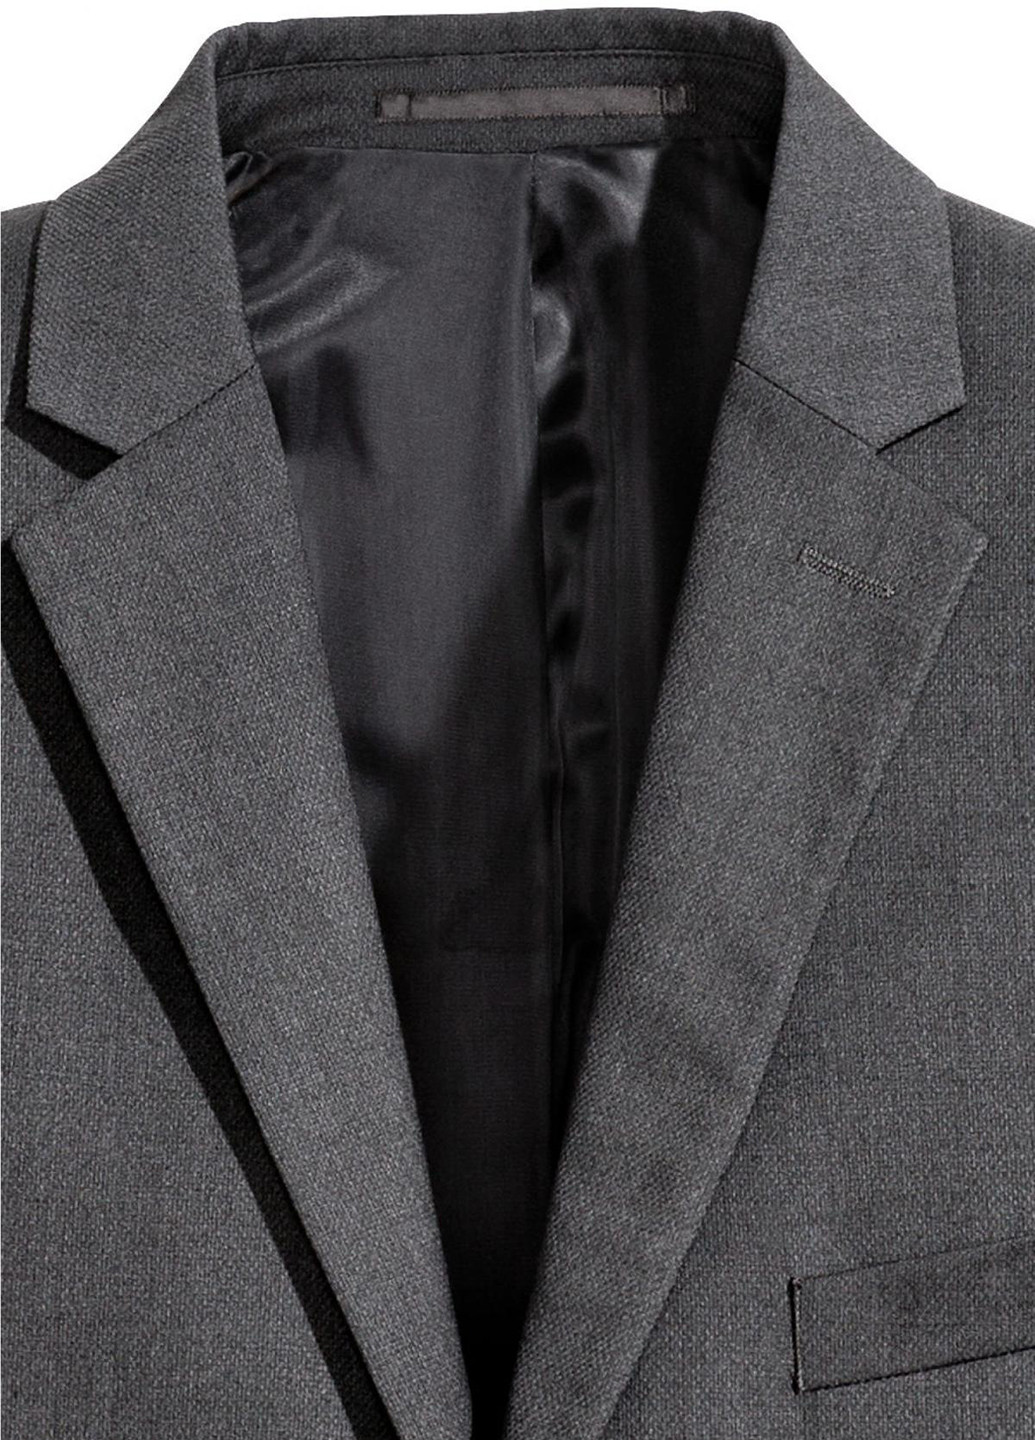 Піджак H&M однобортний перець з сілля сірий діловий костюмна, поліестер